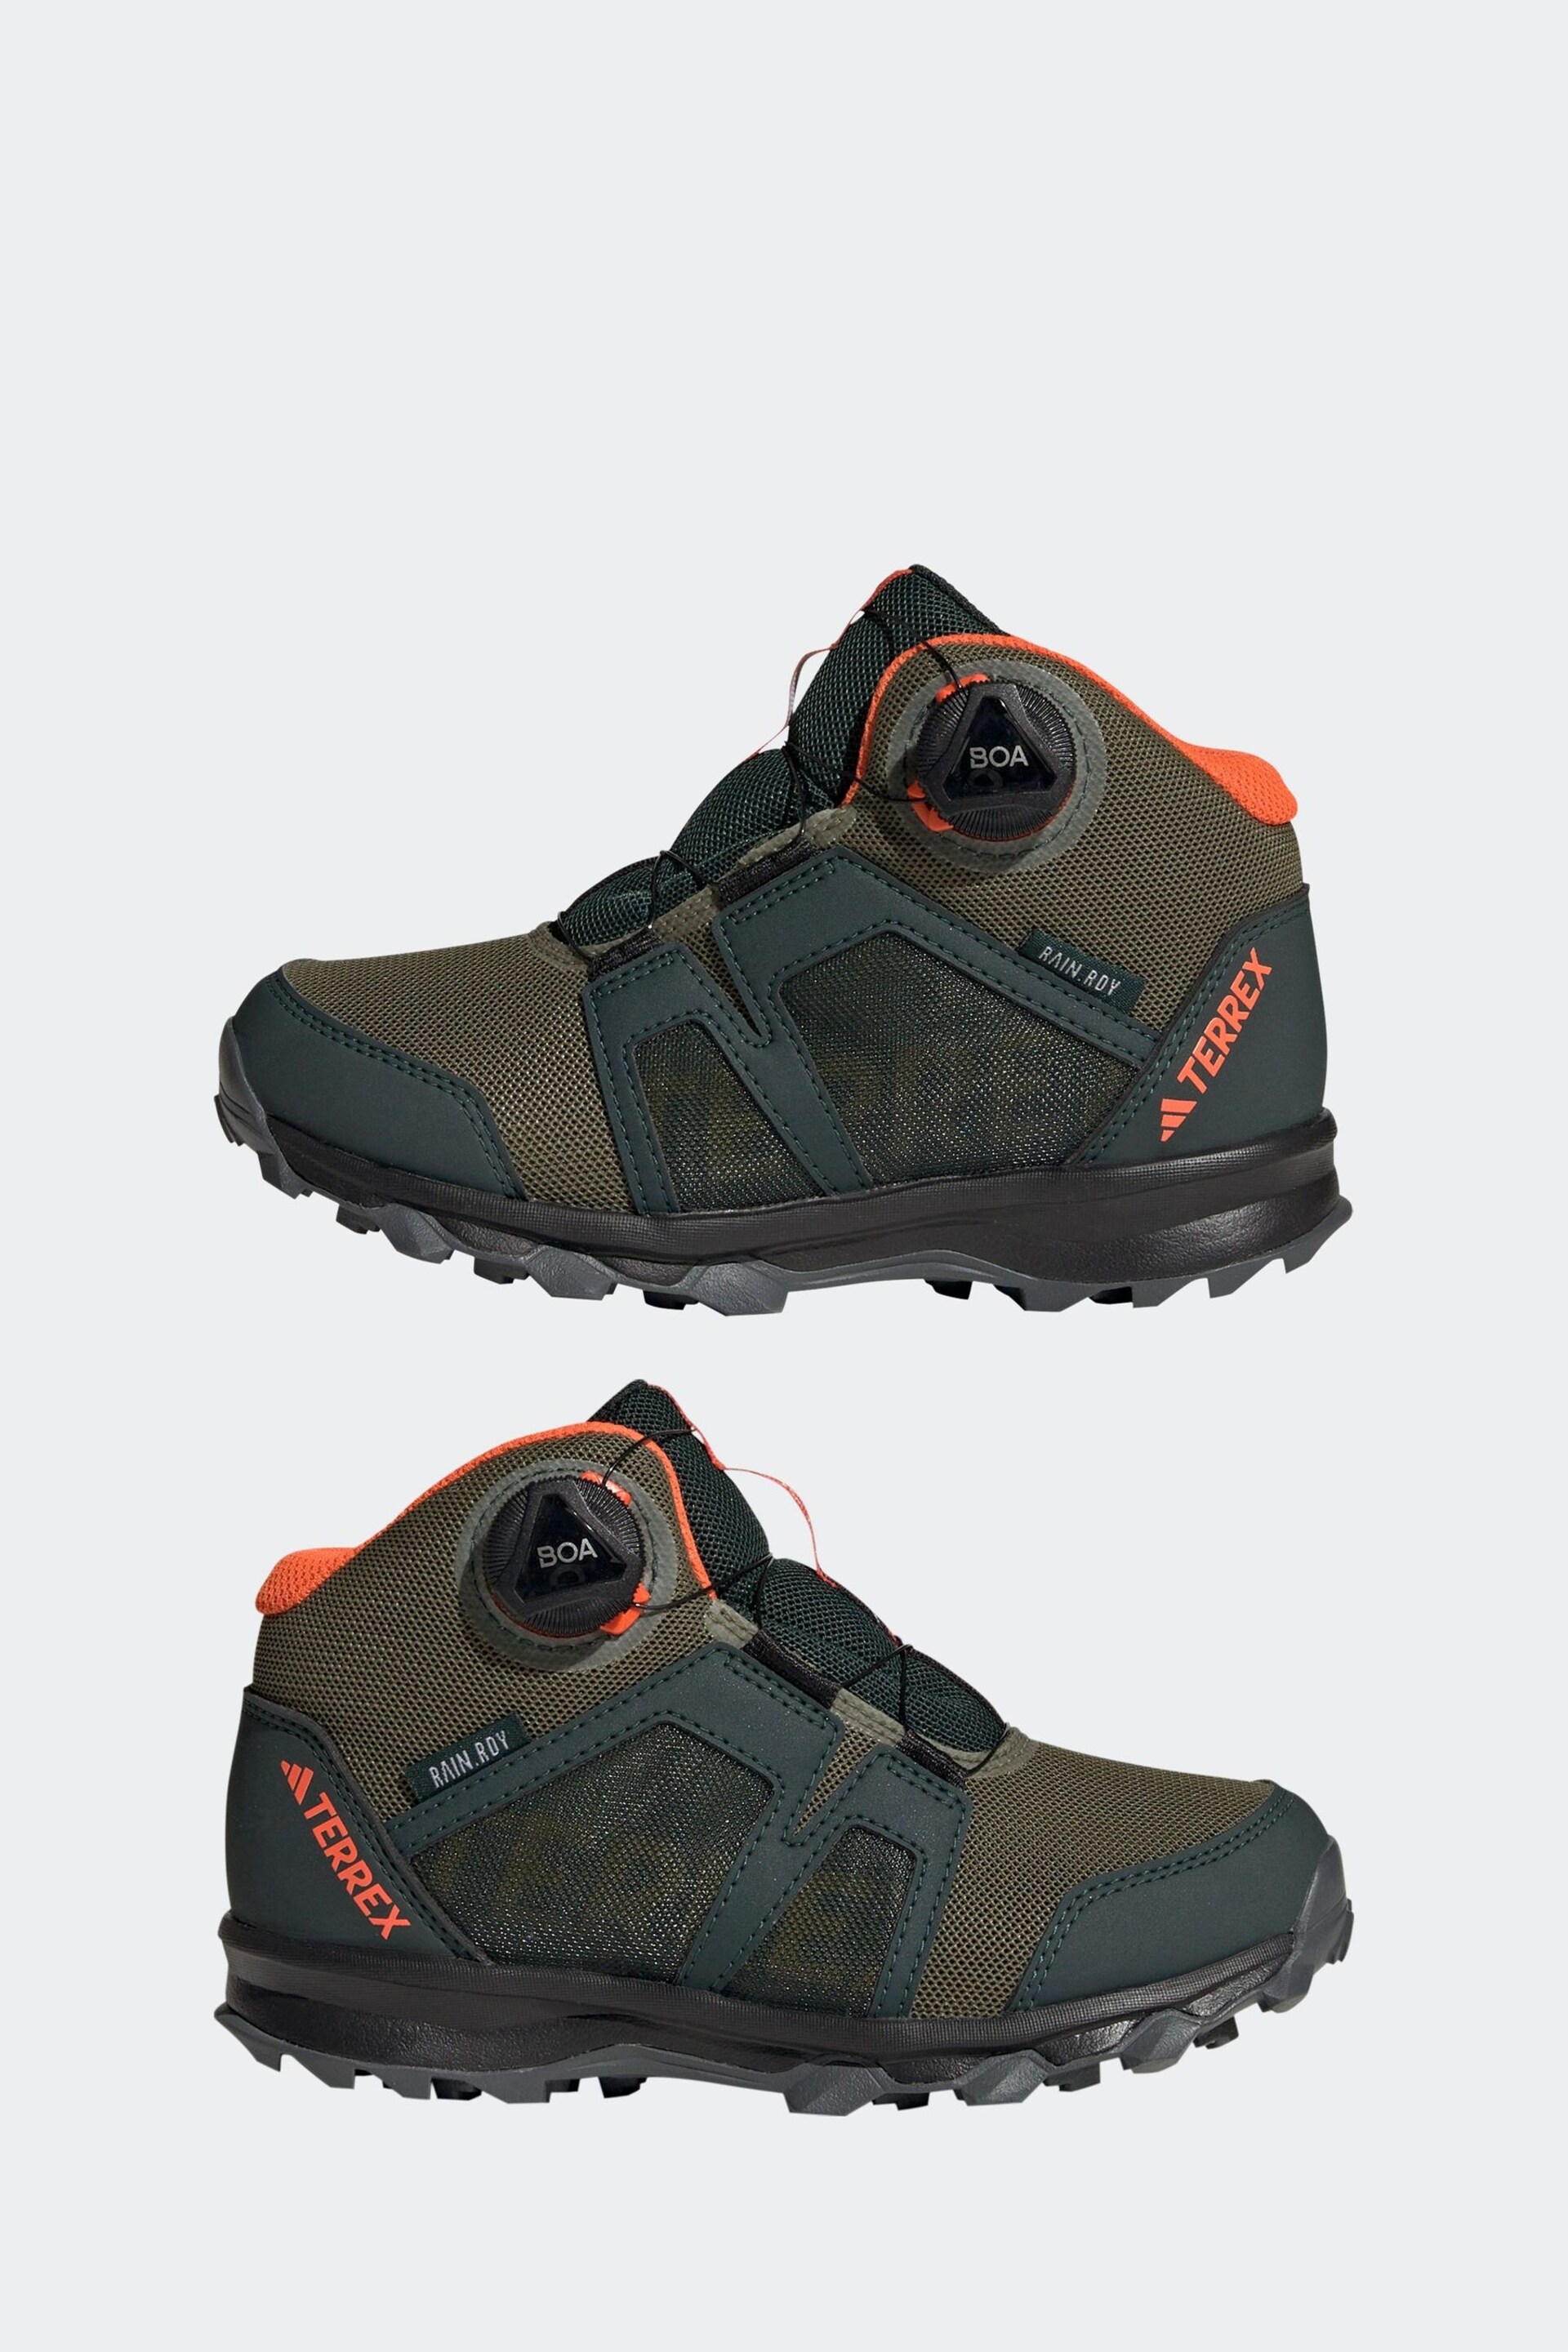 adidas Green Terrex Boa Mid Rain Hiking Boots - Image 5 of 9